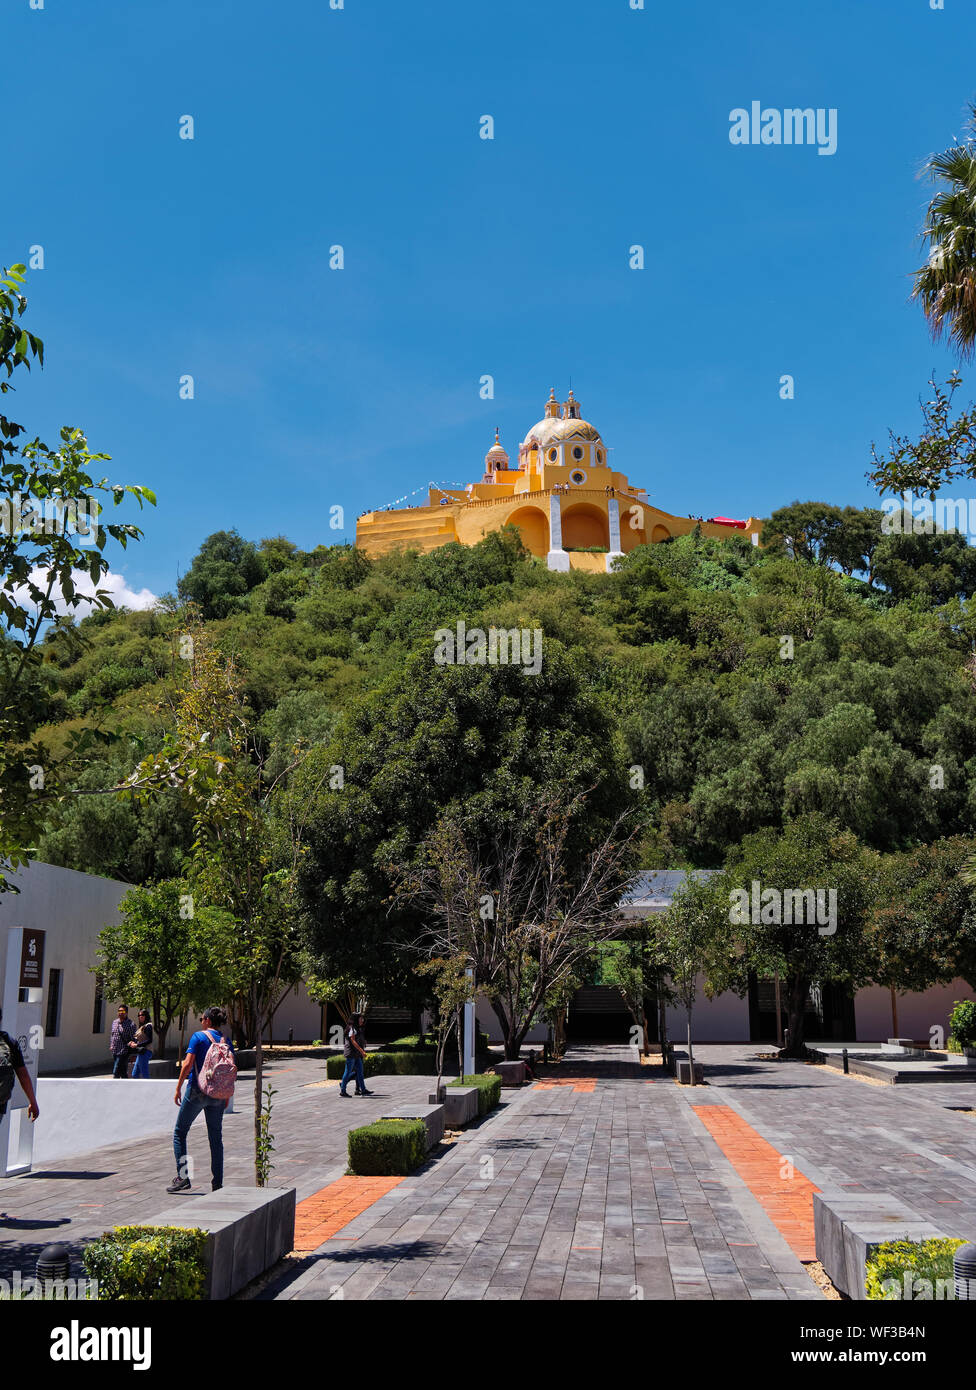 San Andres Cholula, Messico, Settembre 30, 2018 - bel Santuario di Nostra Signora dei Rimedi santuario con le persone nel museo regionale a giornata soleggiata con cielo blu. Foto Stock